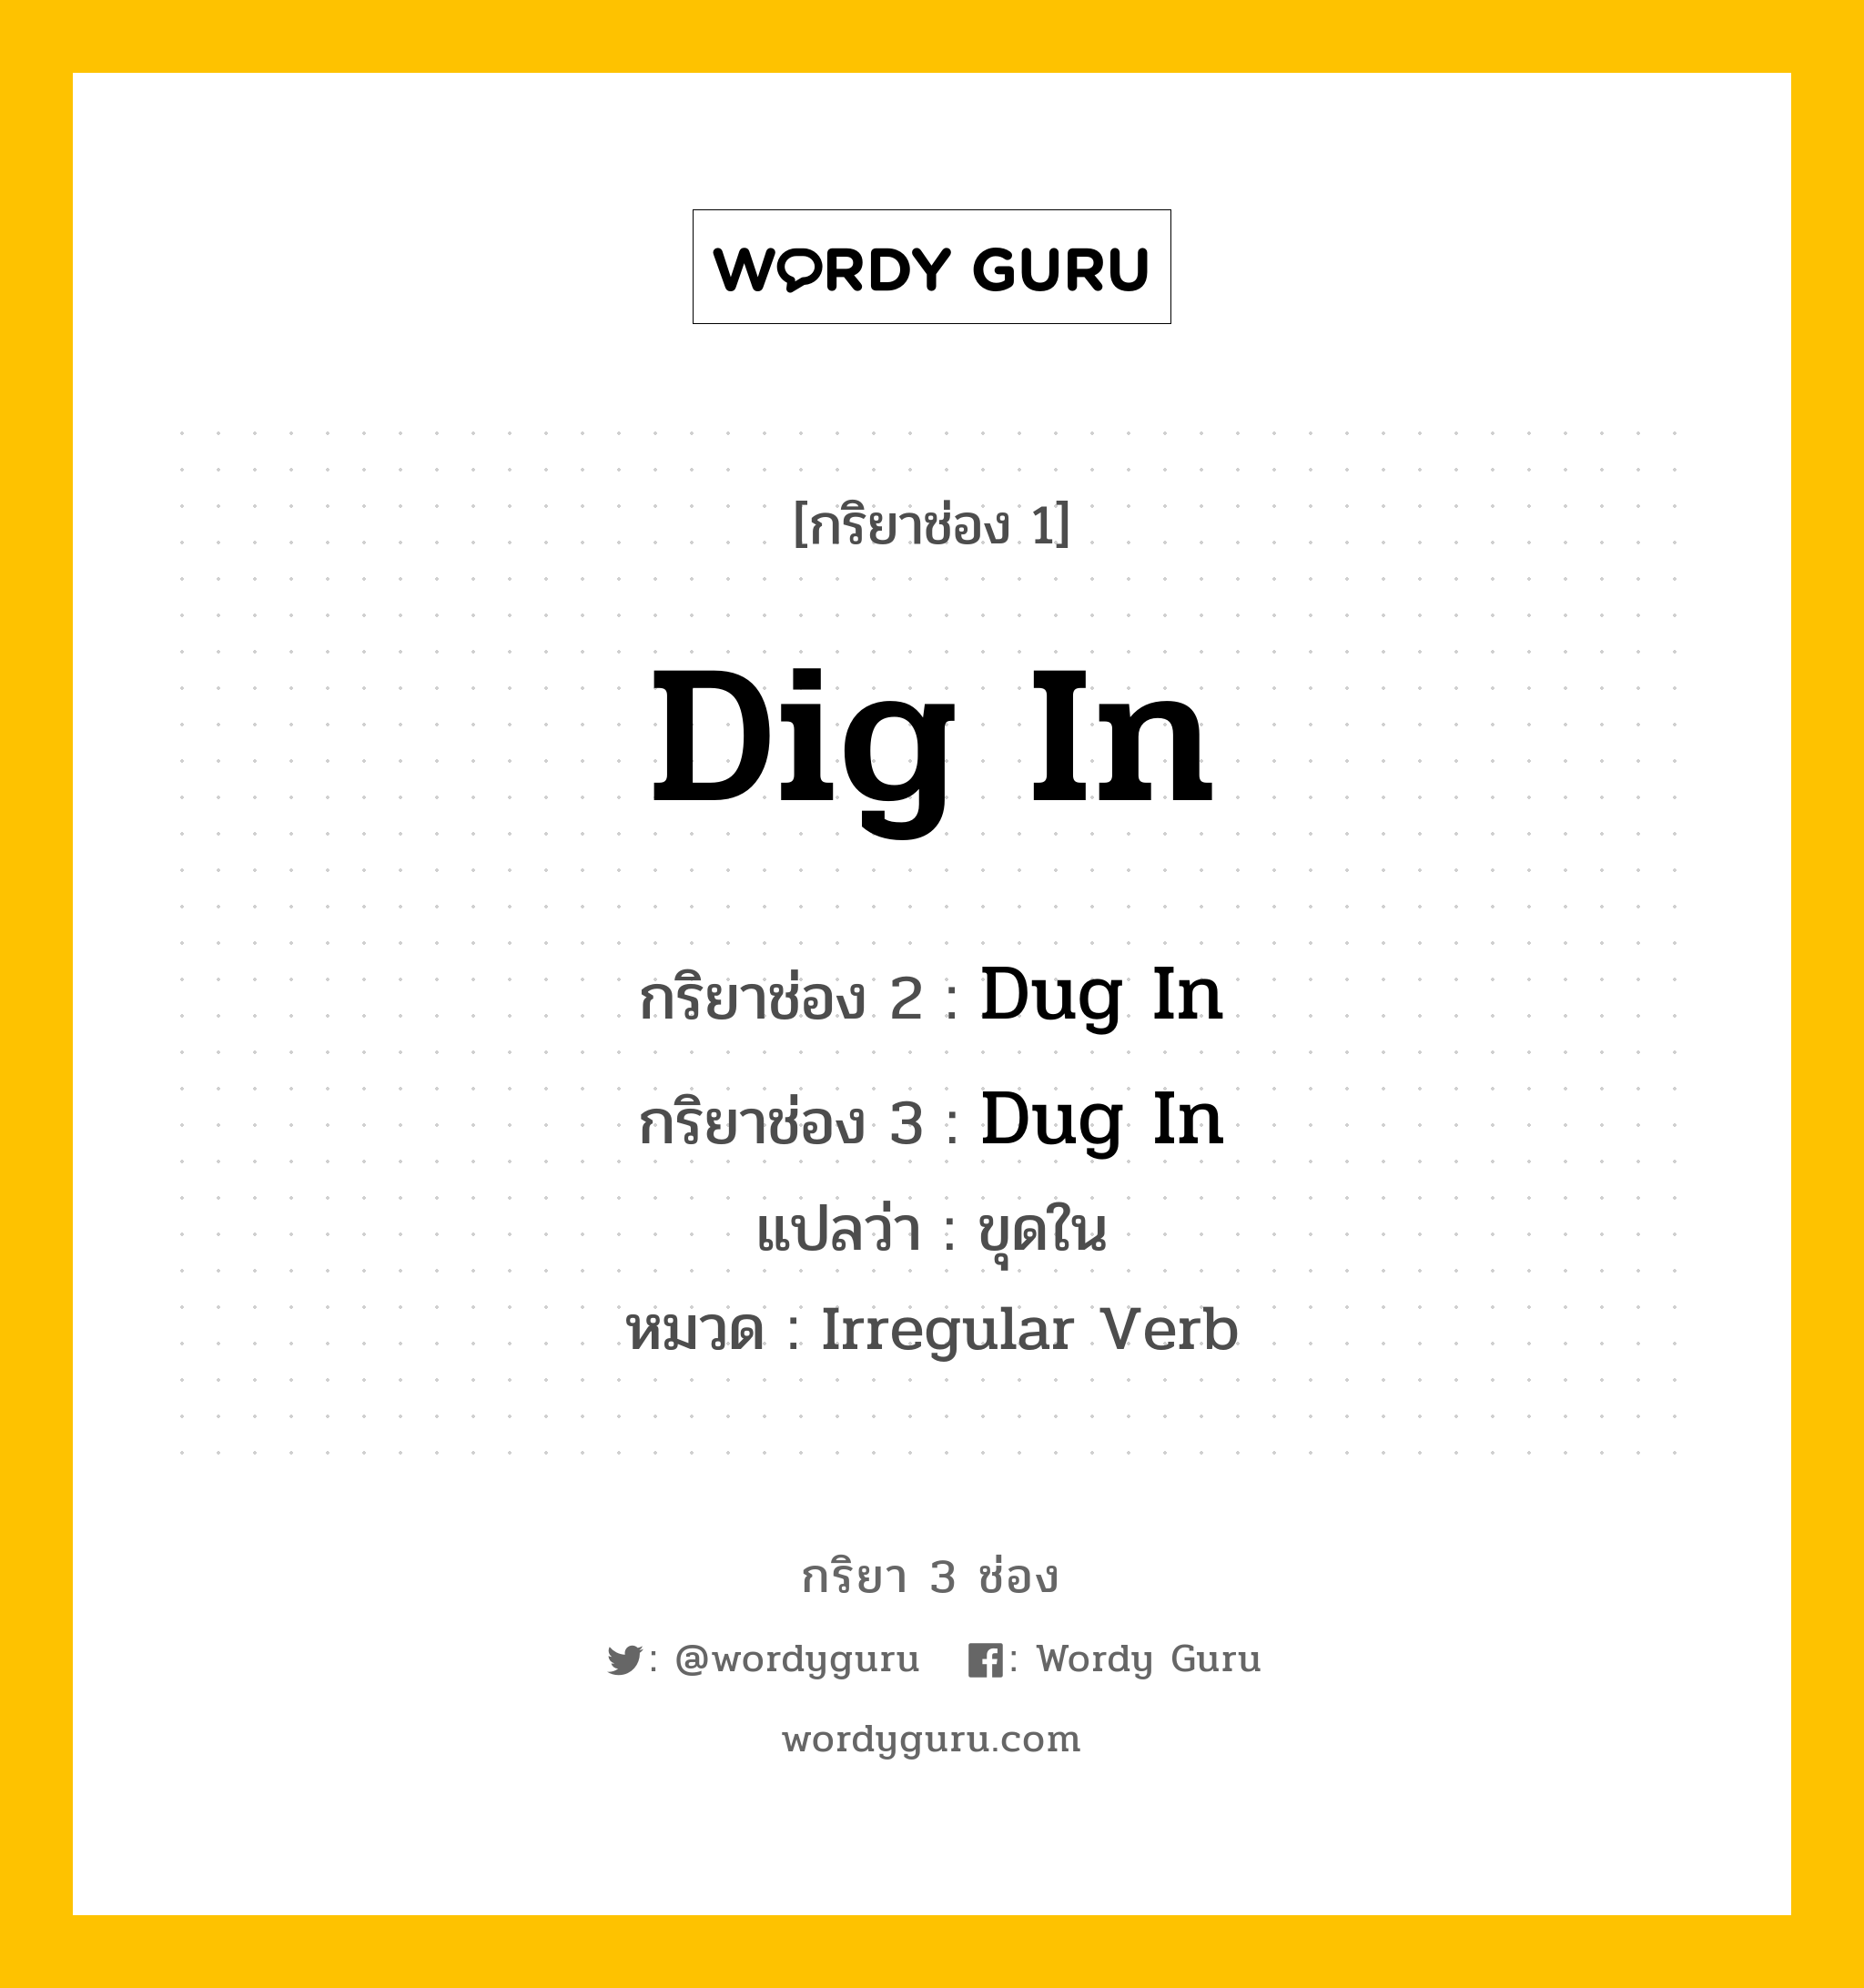 Dig In มีกริยา 3 ช่องอะไรบ้าง? คำศัพท์ในกลุ่มประเภท Irregular Verb, กริยาช่อง 1 Dig In กริยาช่อง 2 Dug In กริยาช่อง 3 Dug In แปลว่า ขุดใน หมวด Irregular Verb หมวด Irregular Verb